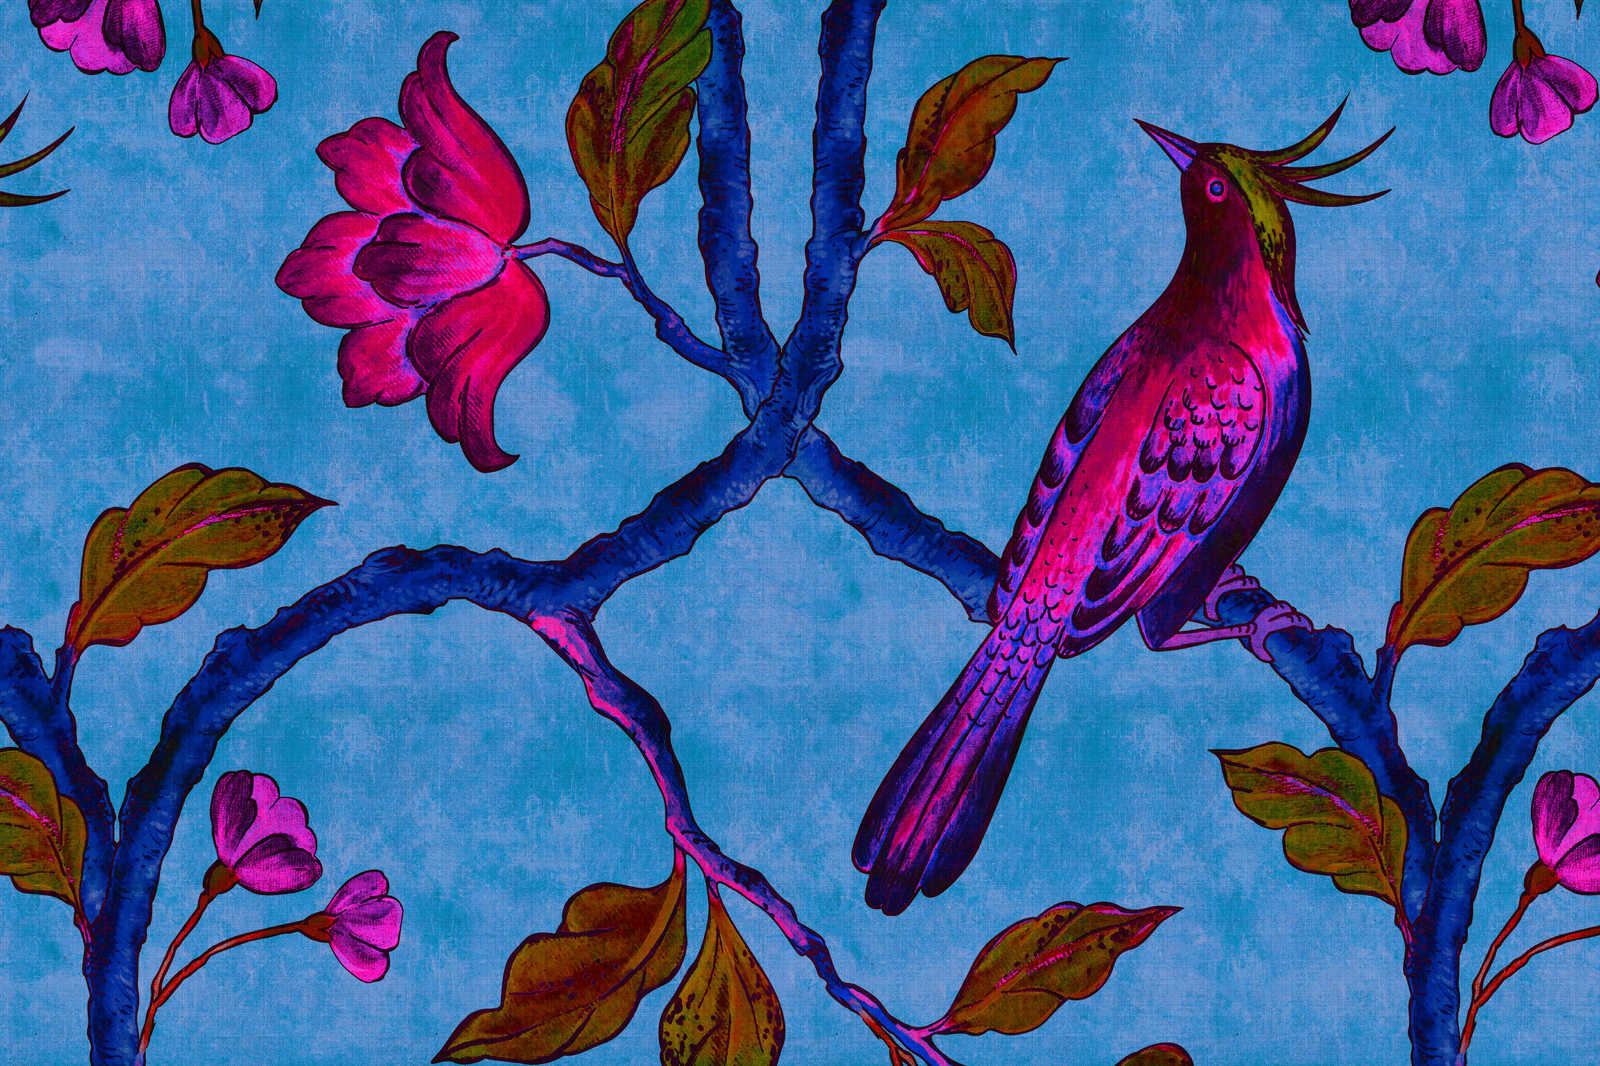             Bird Of Paradis 1 - Canvas schilderij in natuurlijke linnenstructuur met paradijsvogel - 0.90 m x 0.60 m
        